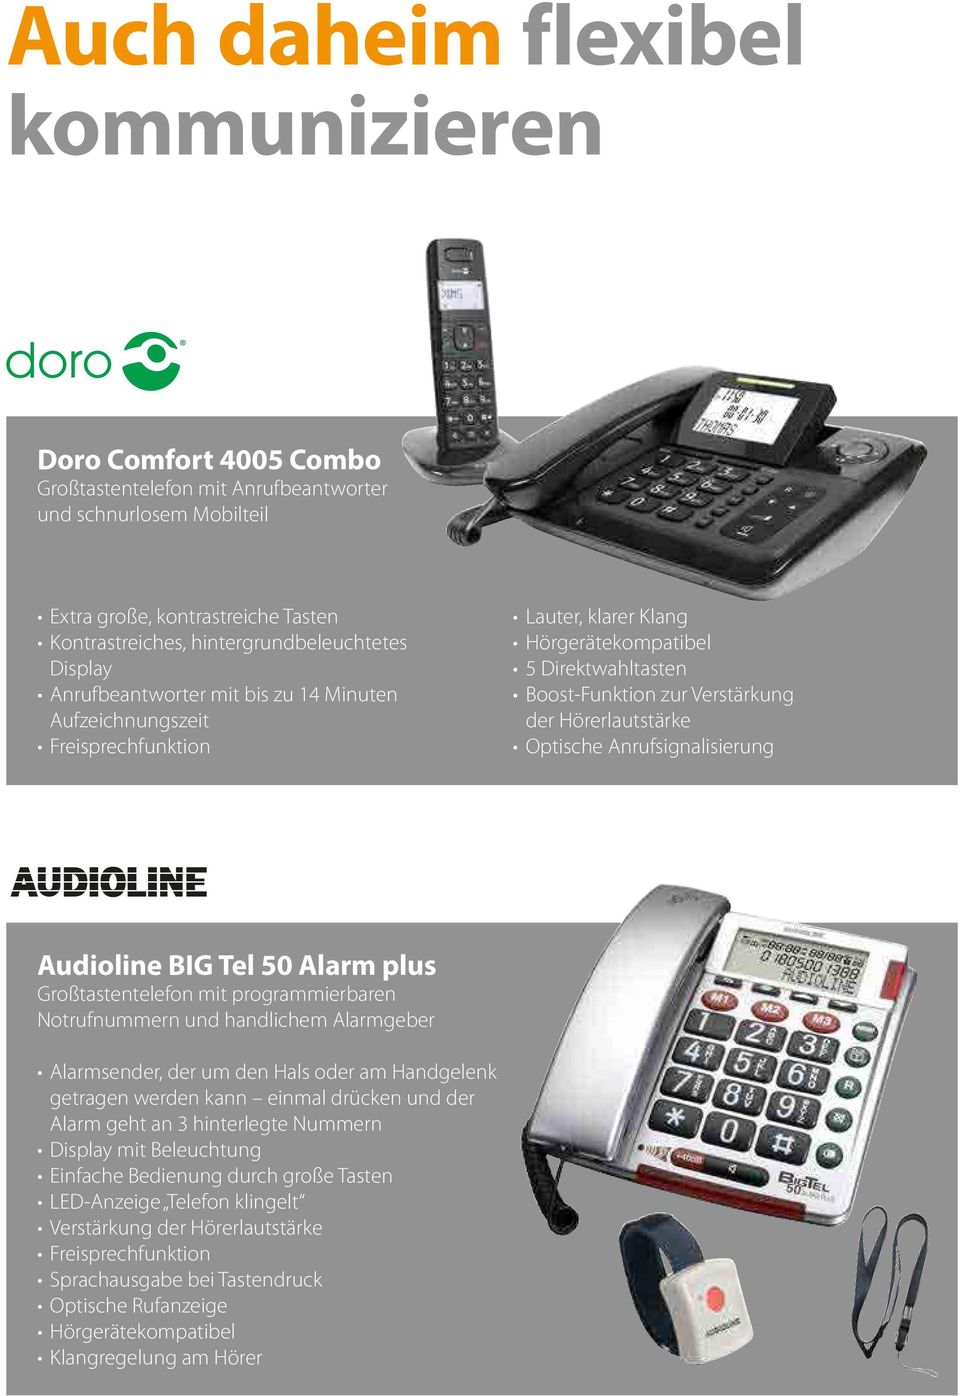 Optische Anrufsignalisierung Audioline BIG Tel 50 Alarm plus Großtastentelefon mit programmierbaren Notrufnummern und handlichem Alarmgeber Alarmsender, der um den Hals oder am Handgelenk getragen